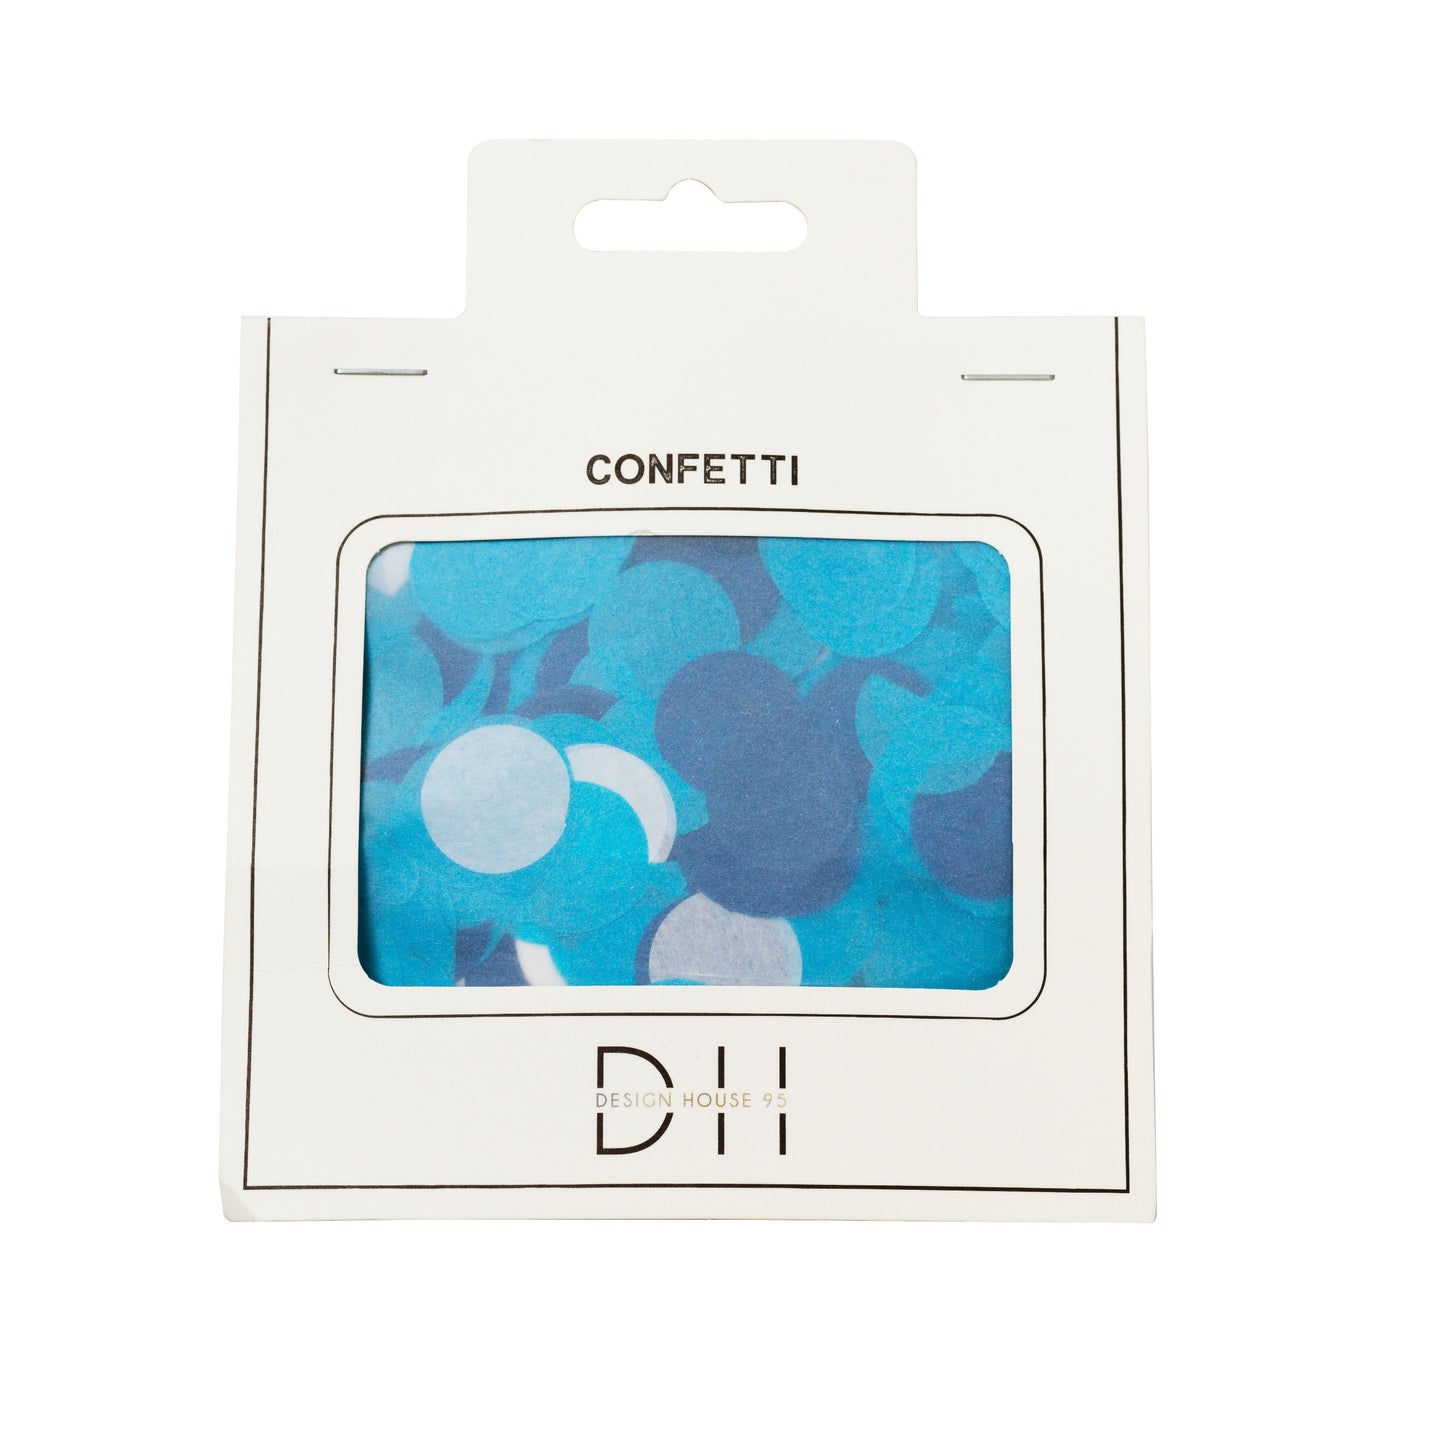 Confetti 30 grams, blue/white